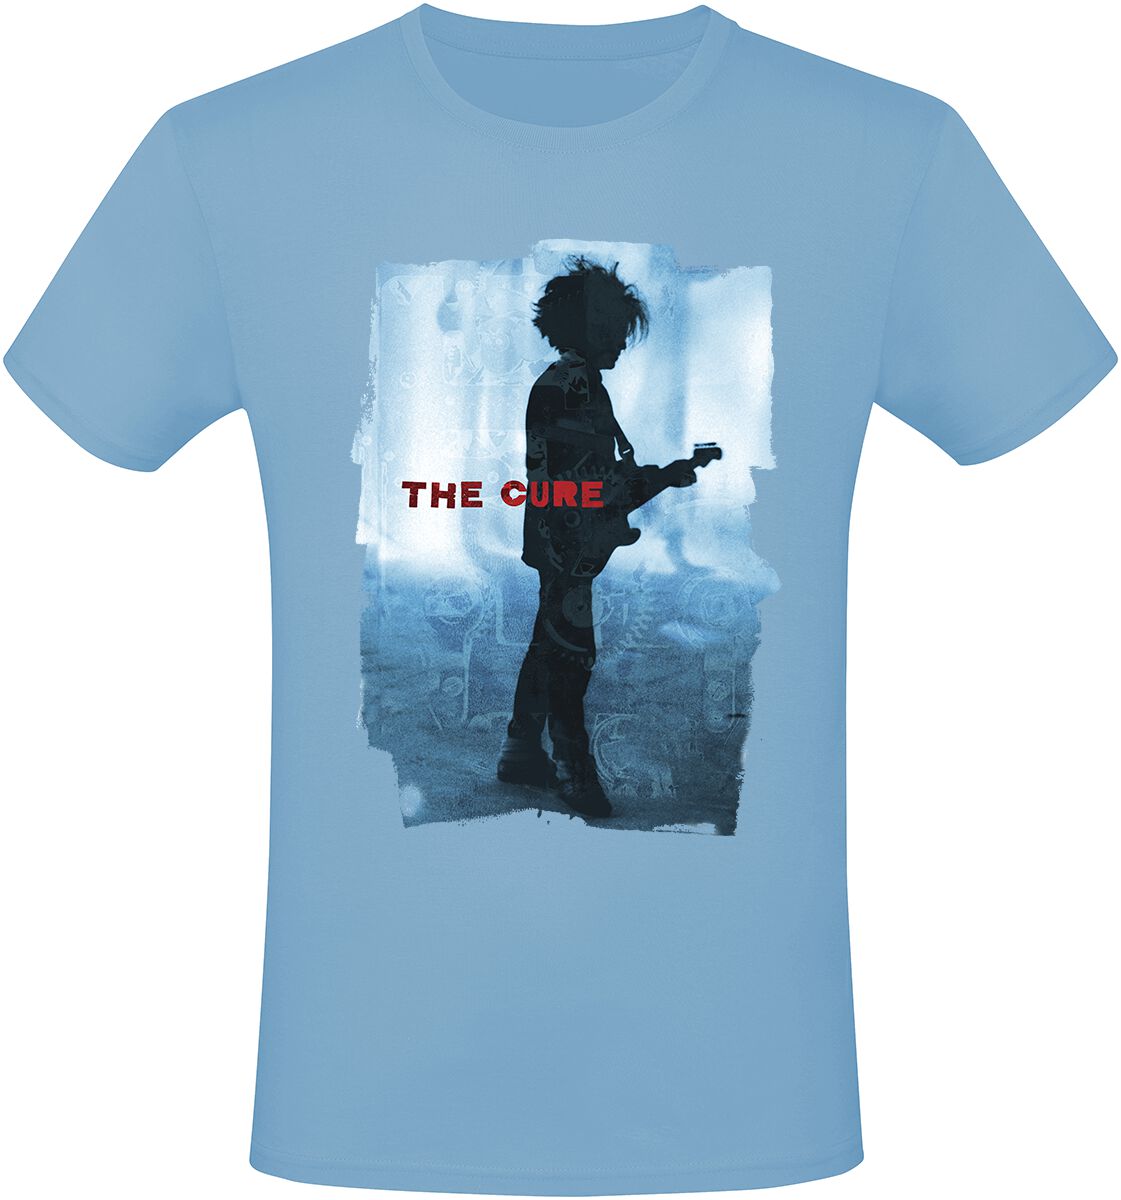 The Cure T-Shirt - Silhouette - M bis L - für Männer - Größe M - hellblau  - Lizenziertes Merchandise!